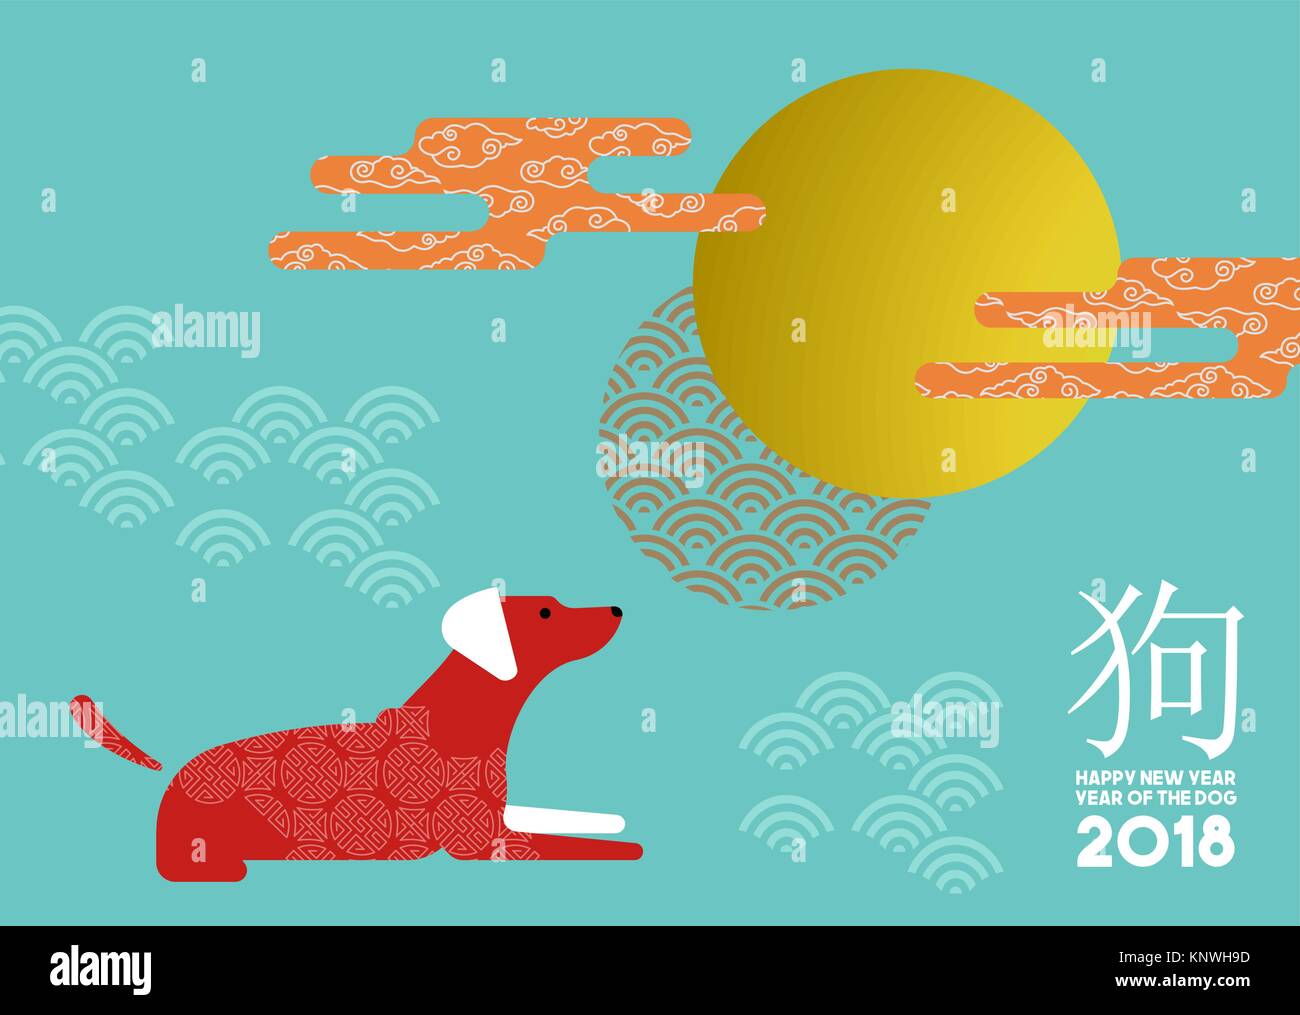 Chinesisches Neujahr 2018 moderne Abbildung im flachen Stil mit traditionellen Kalligraphie das heißt Hund und asiatische Dekoration. EPS 10 Vektor. Stock Vektor